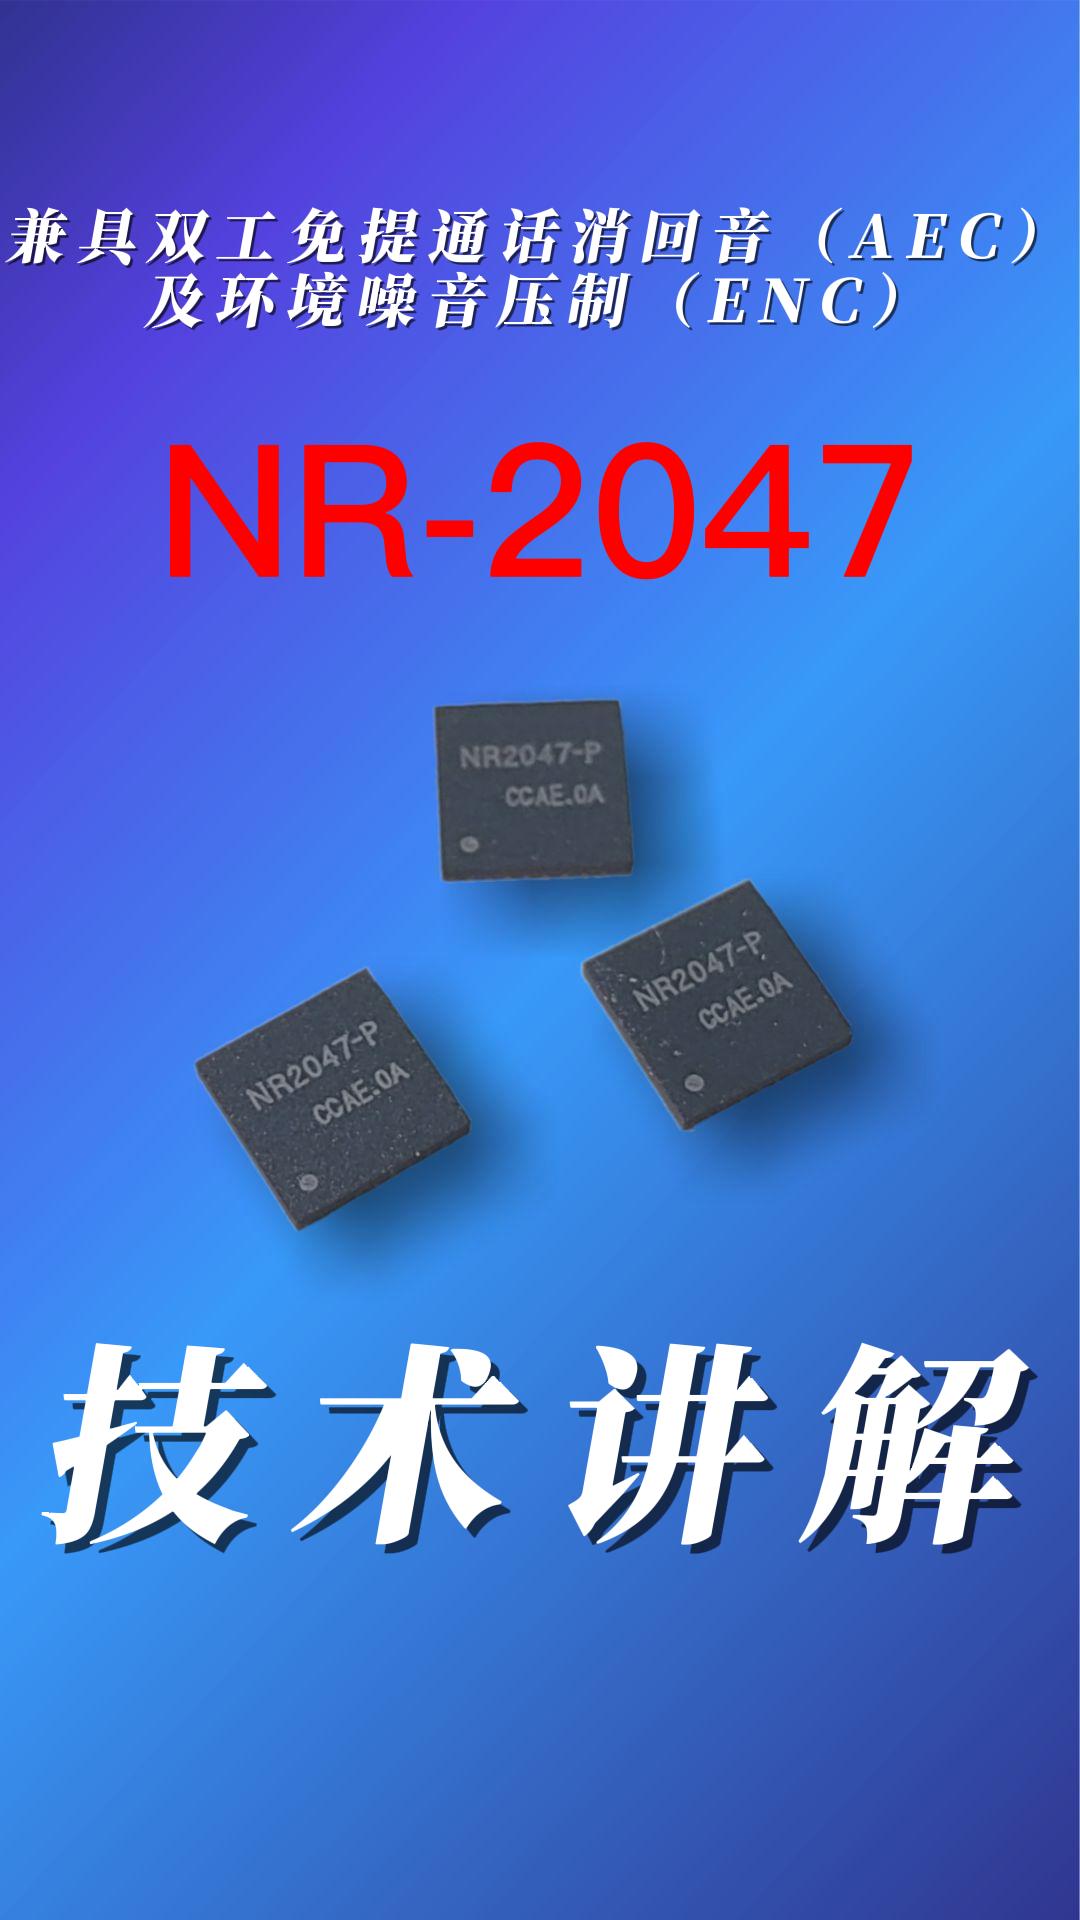 雙麥降噪回音消除芯片NR-2047#產品方案 